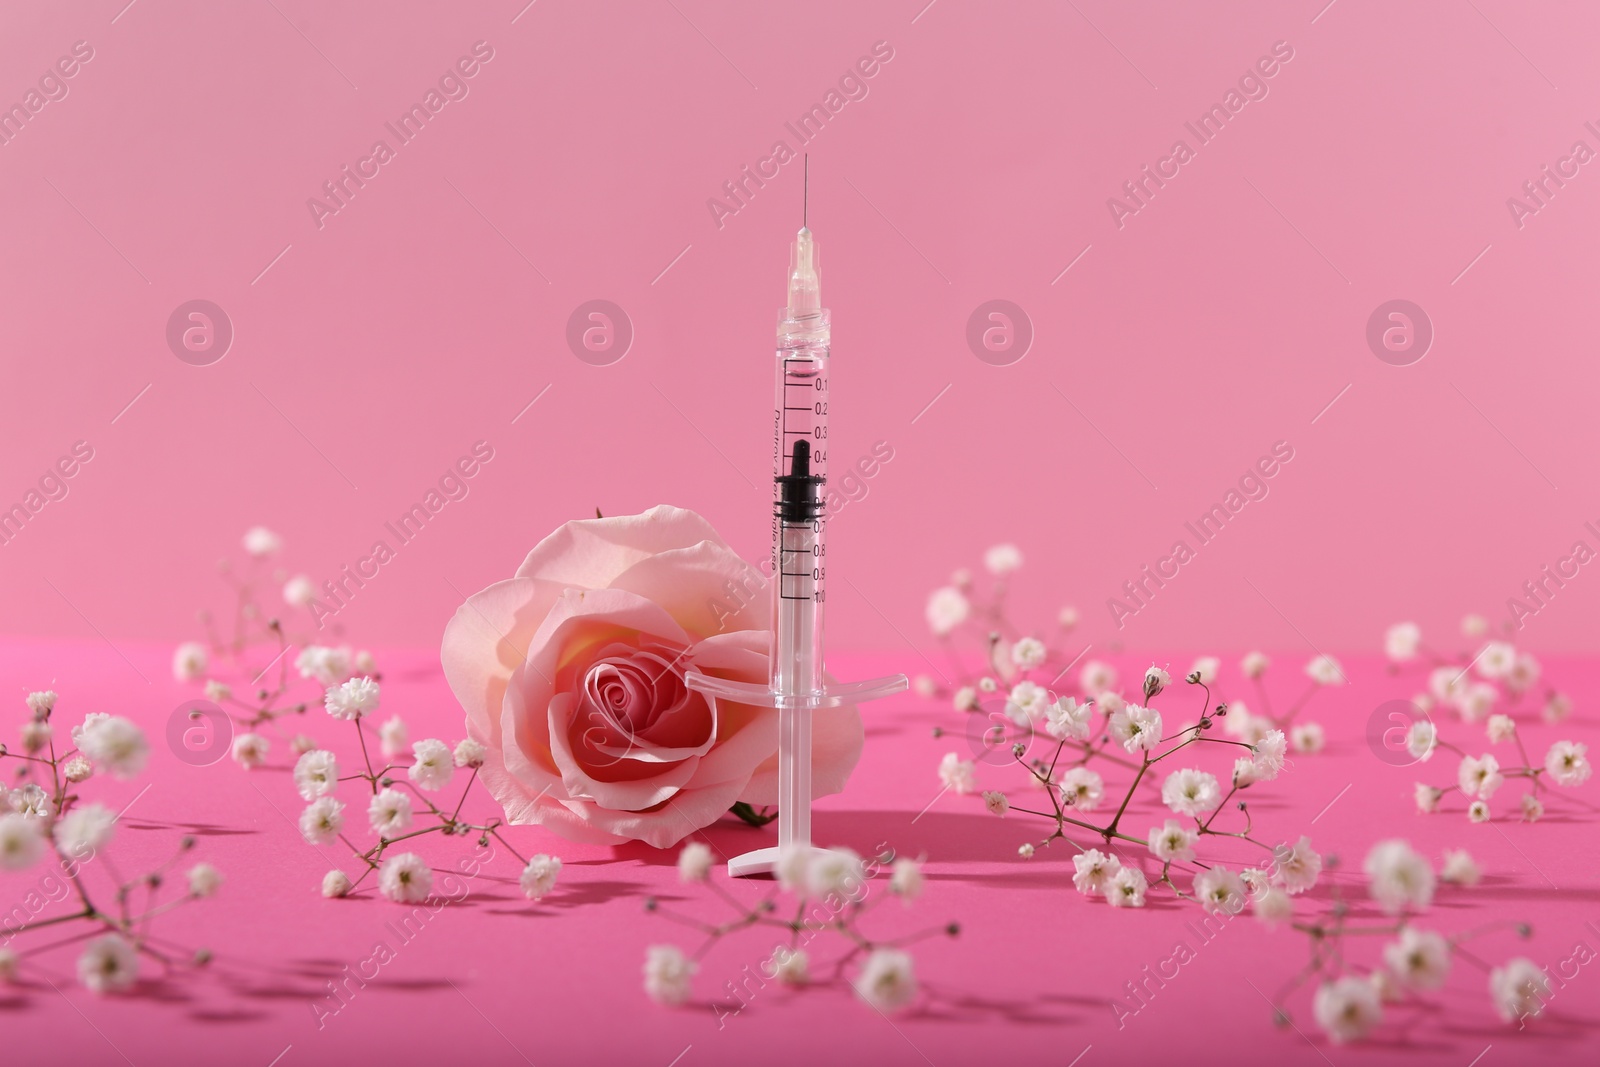 Photo of Cosmetology. Medical syringe, rose and gypsophila flowers on pink background